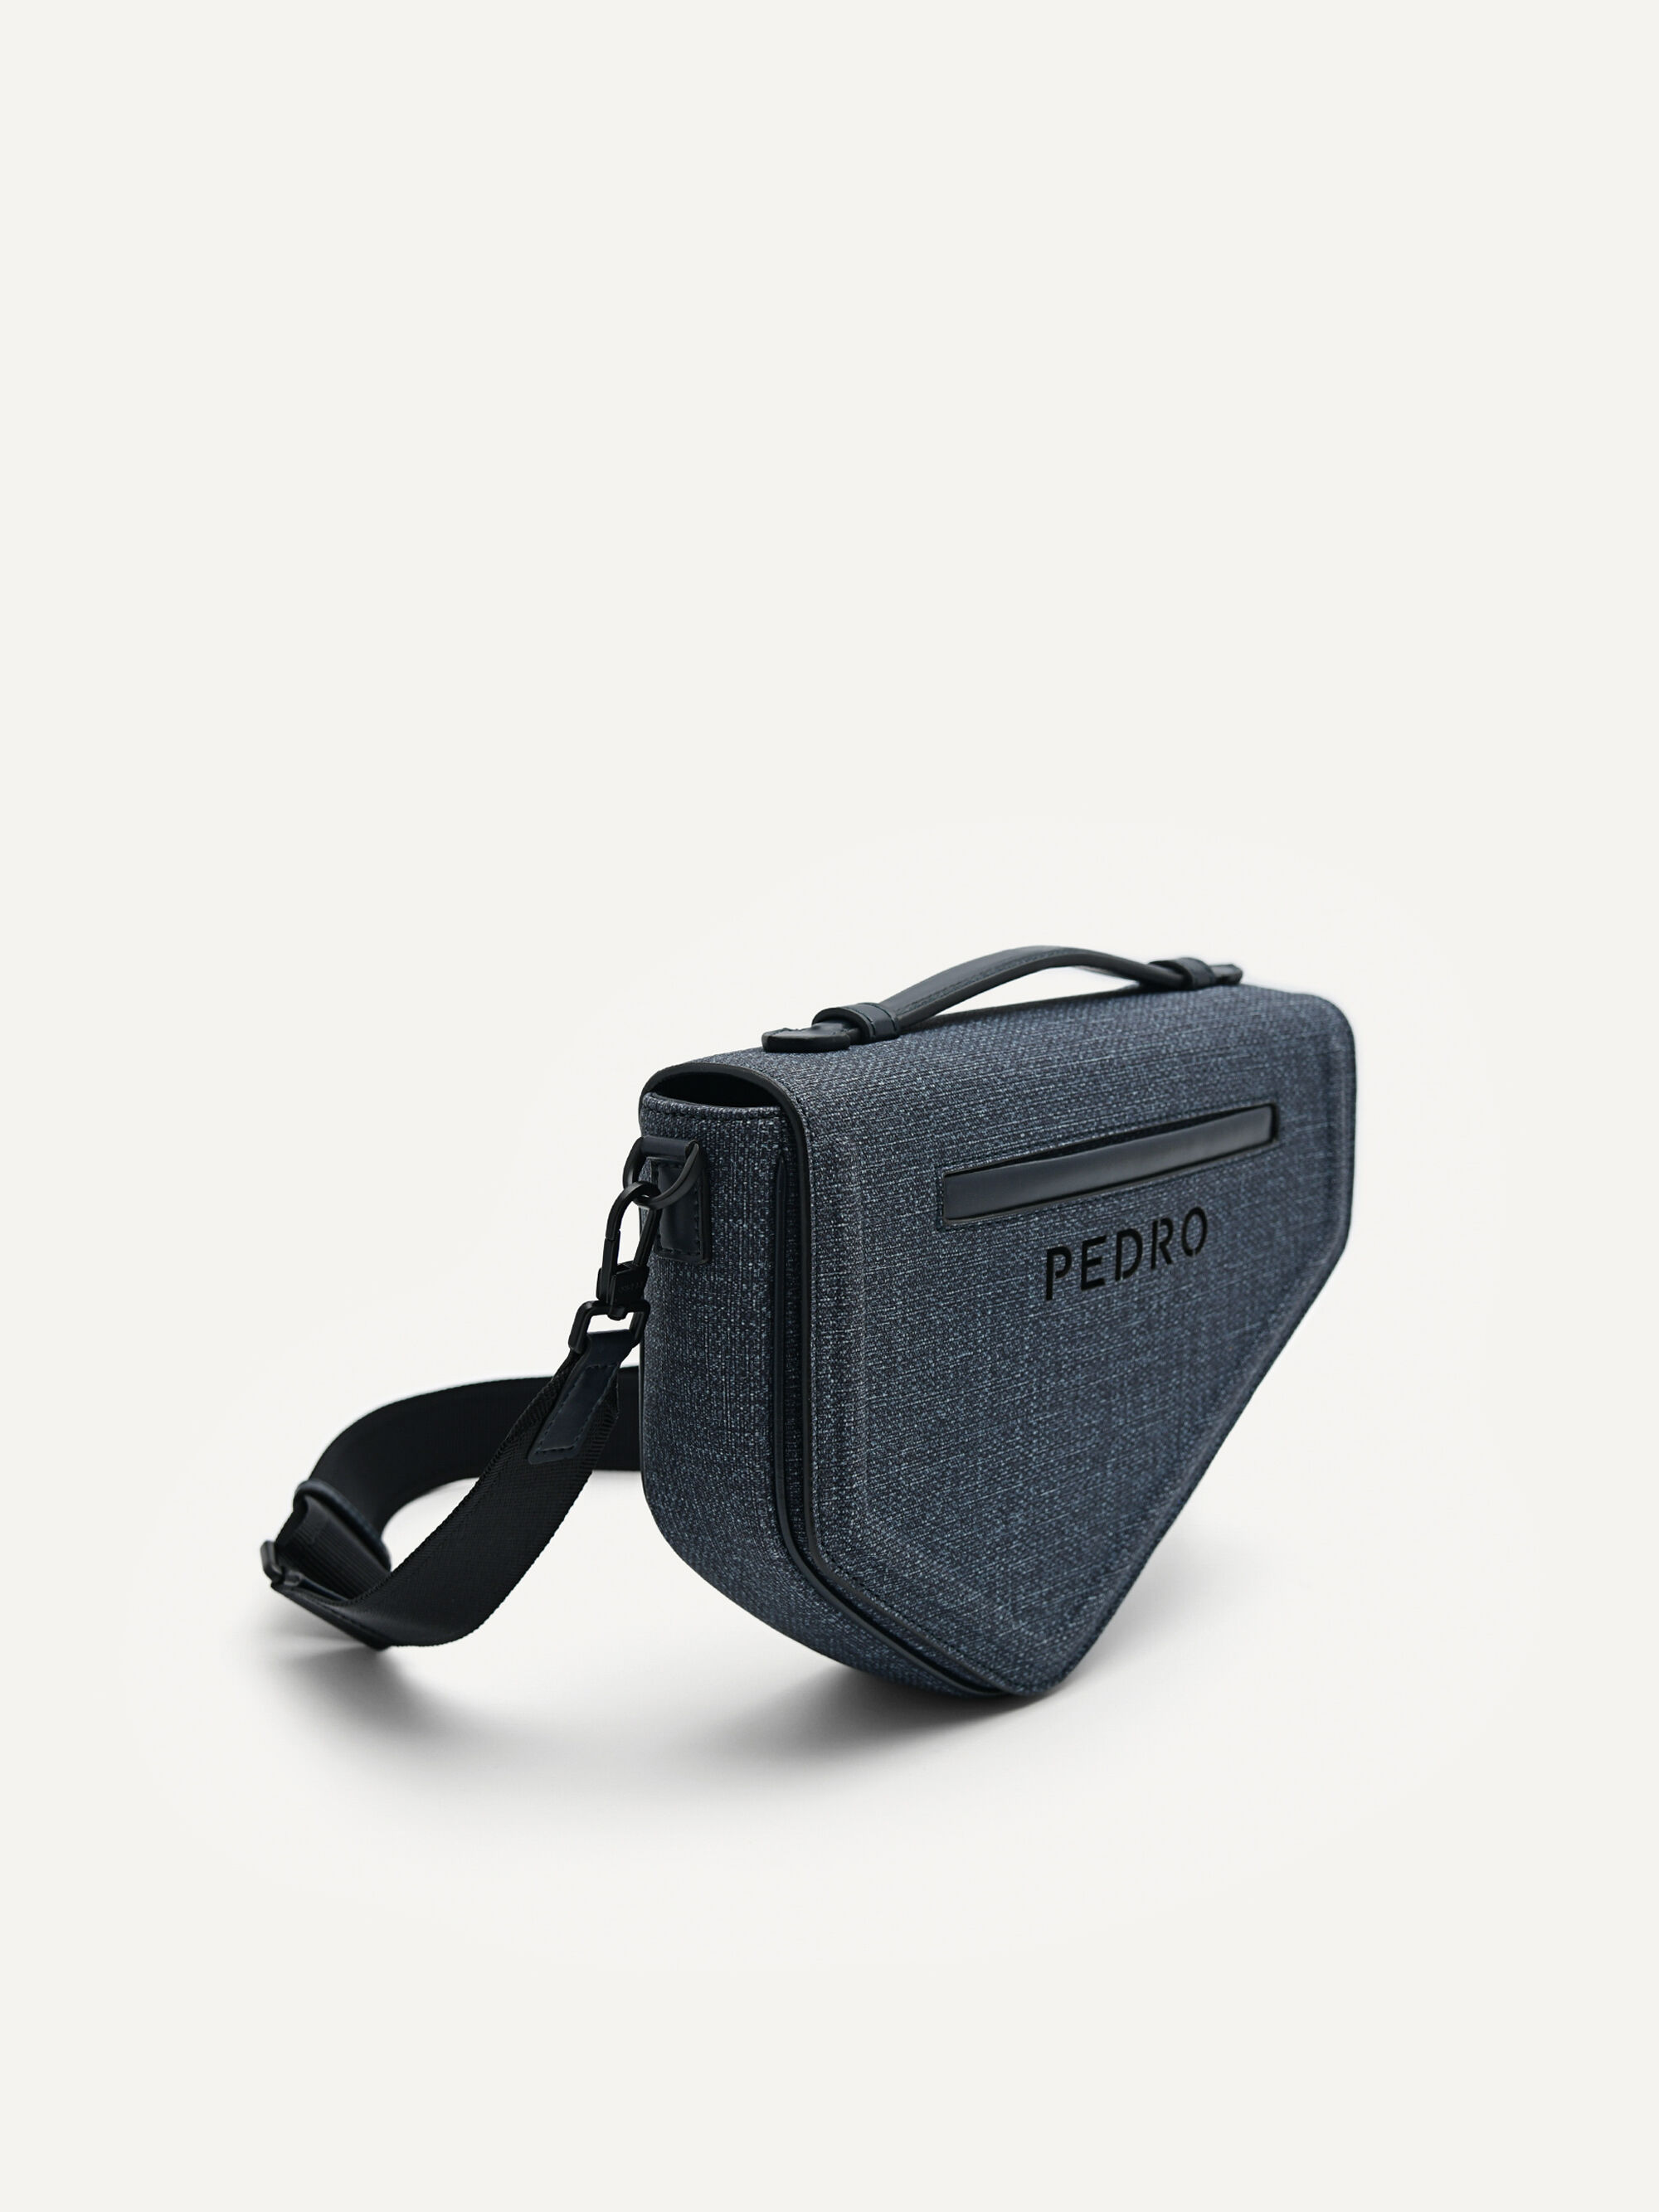 Shop Pedro Sling Bag online